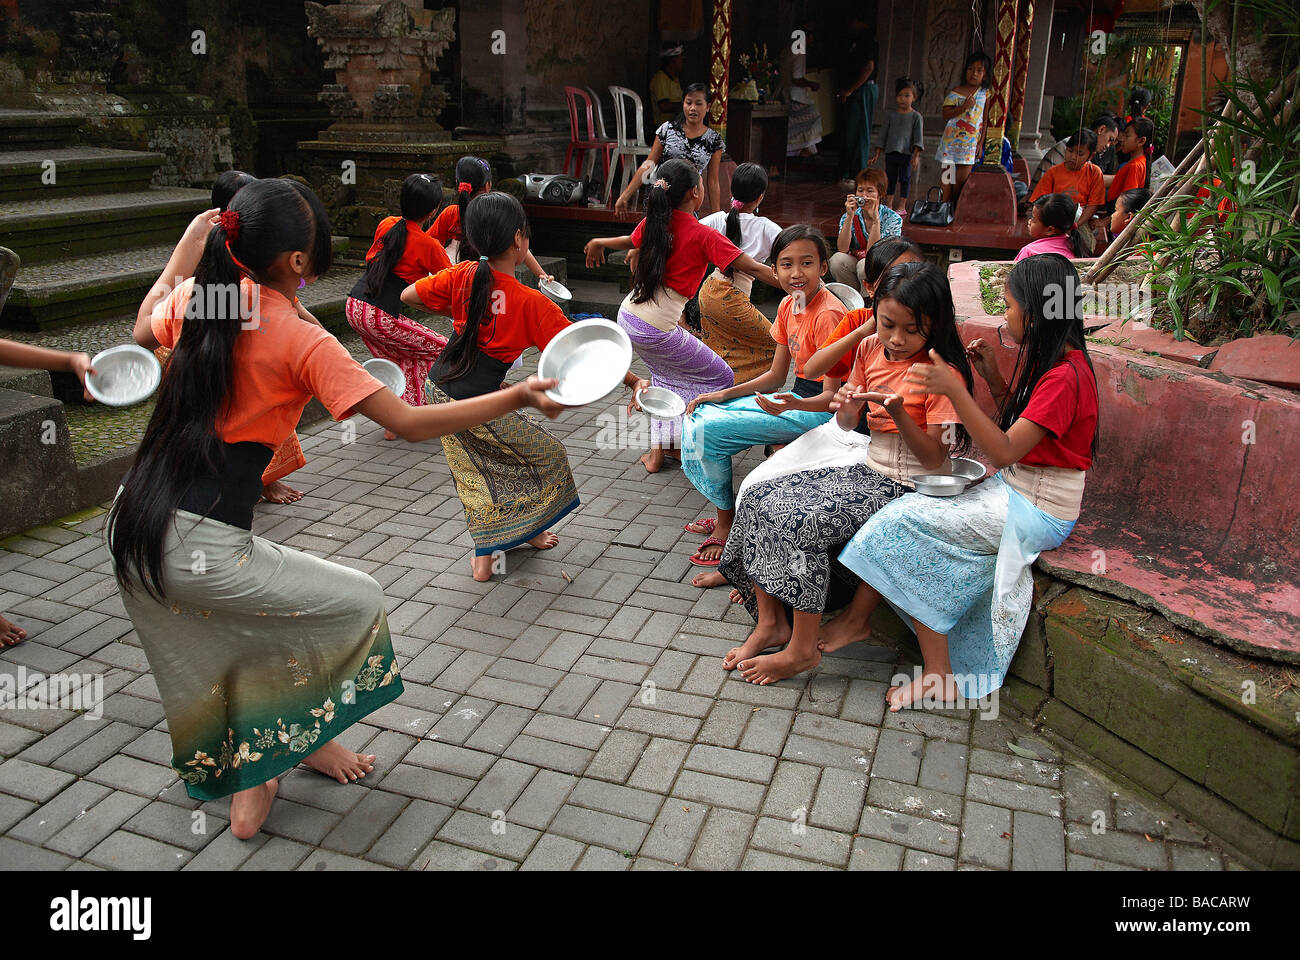 Indonesia, Bali, Ubud, school of traditional dance (Legong) Stock Photo